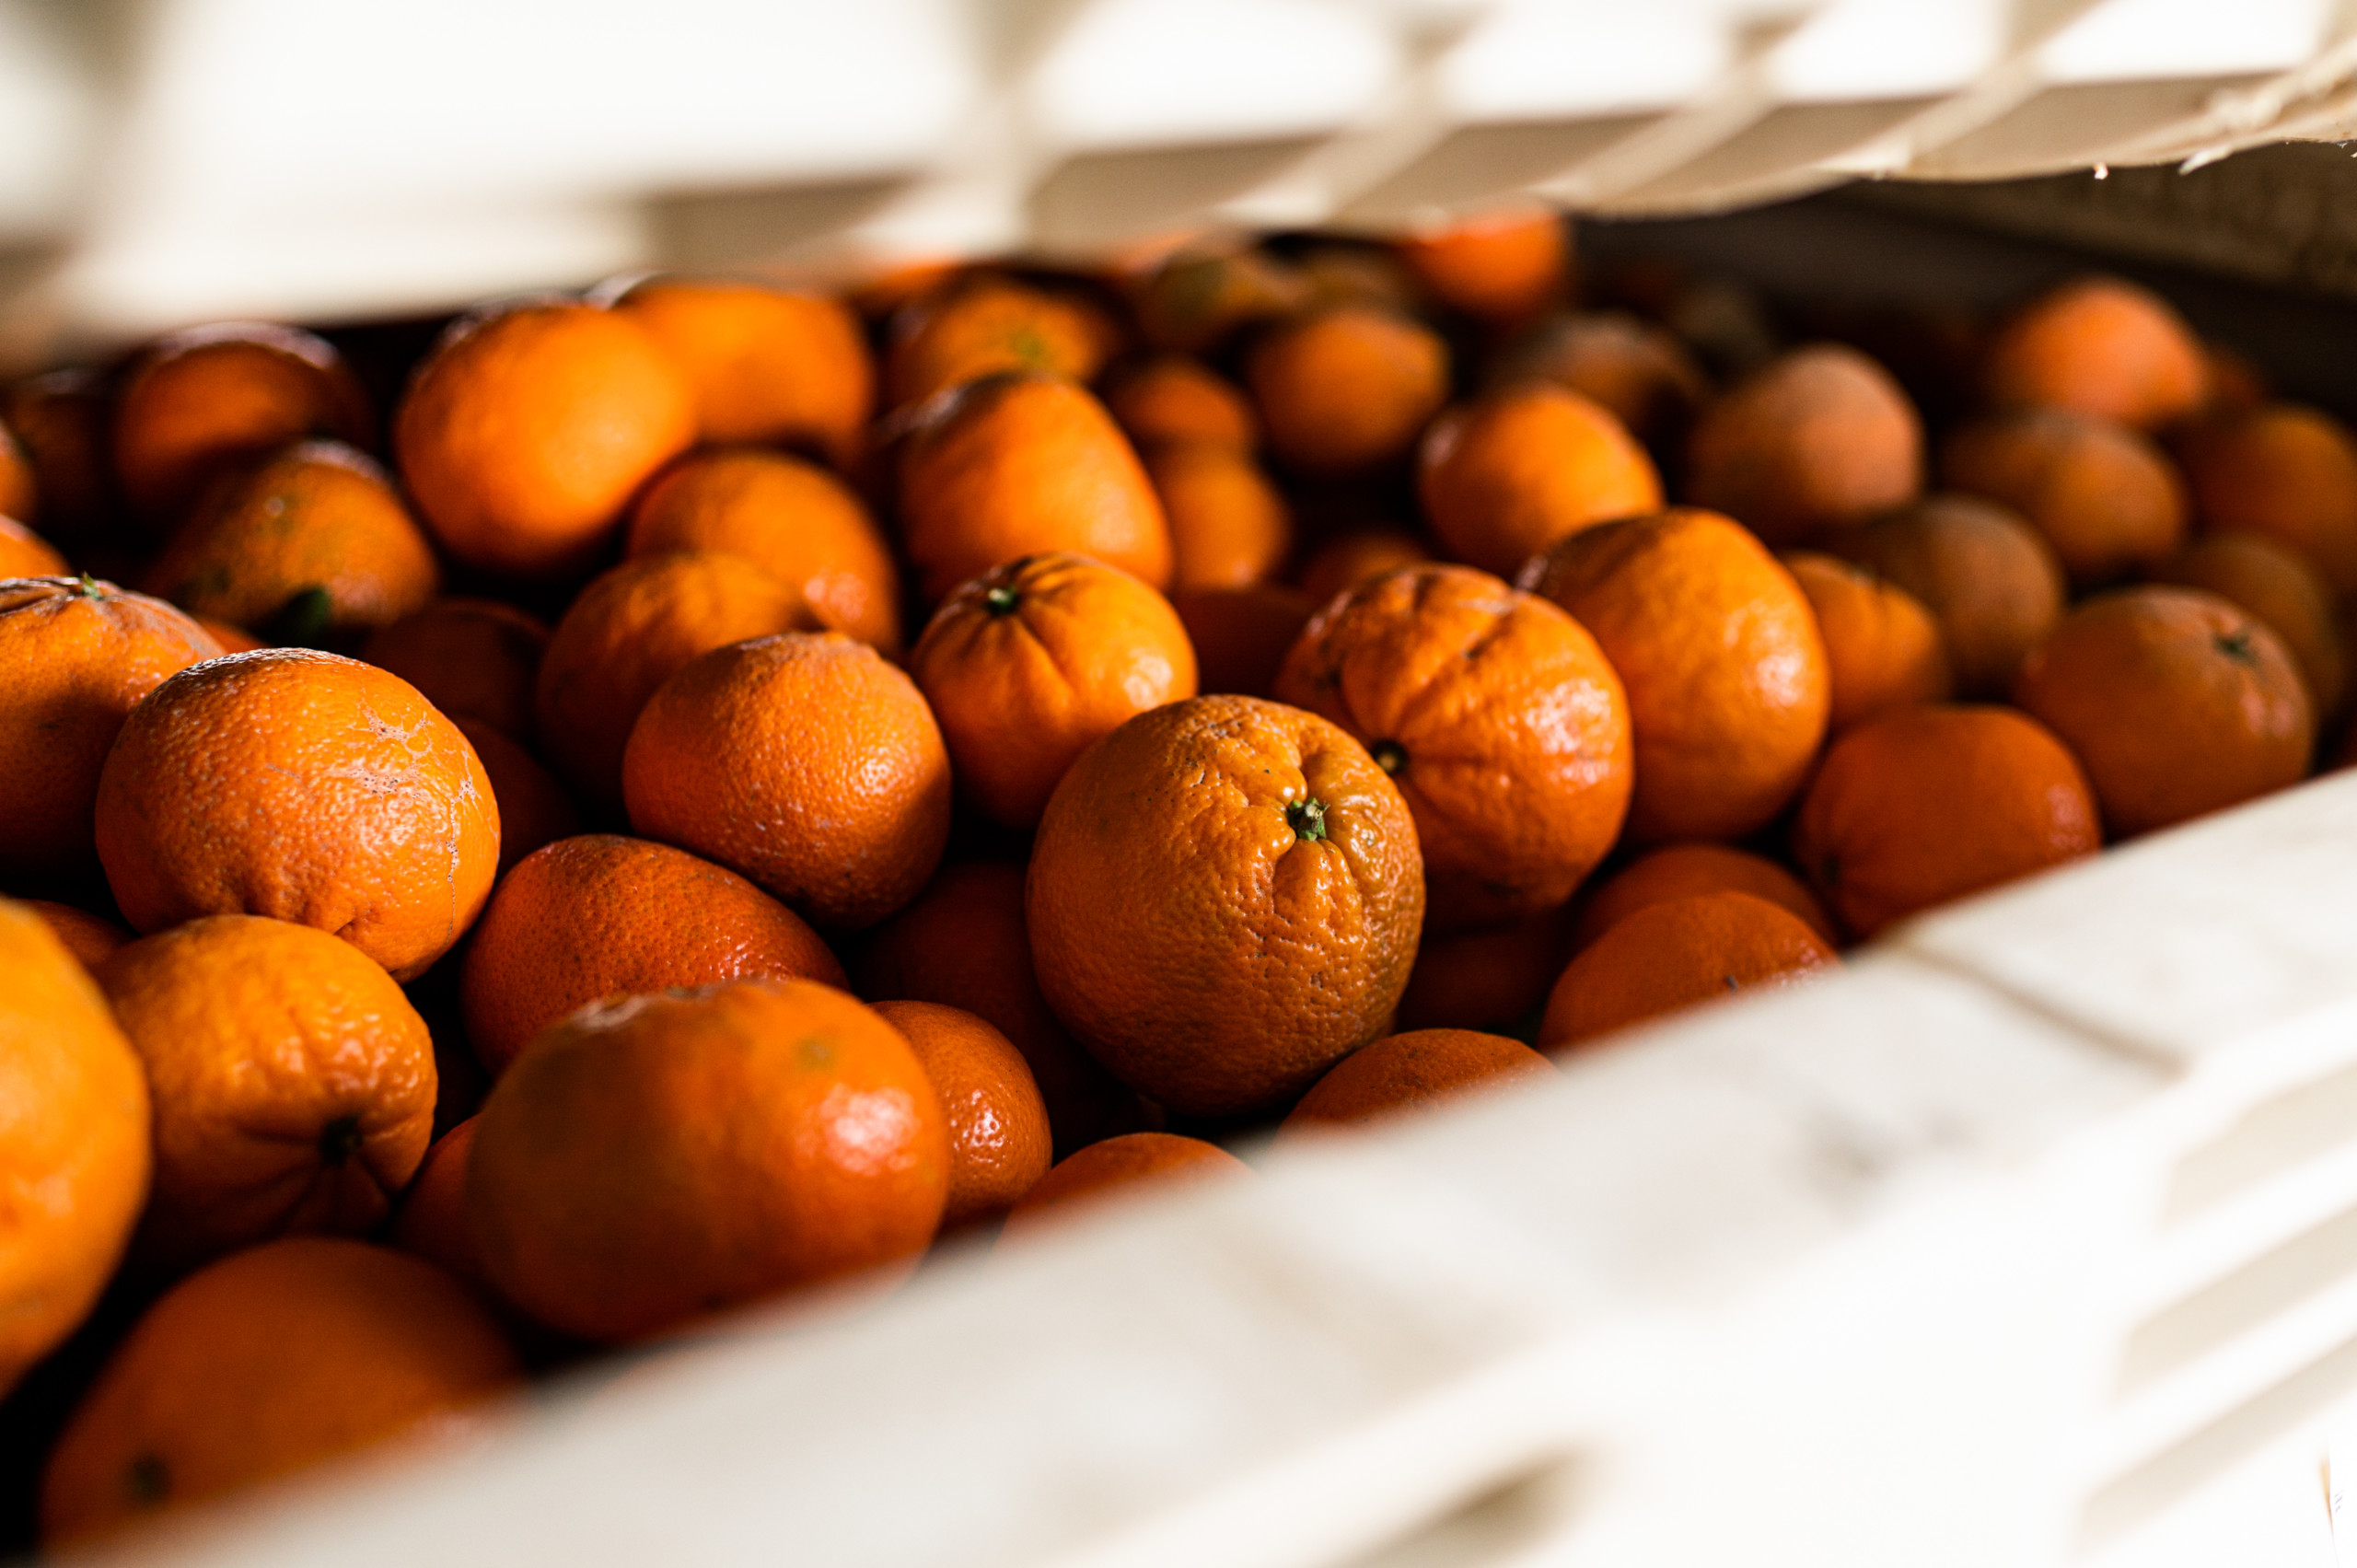 Freshly picked mandarins stacked in produce bins